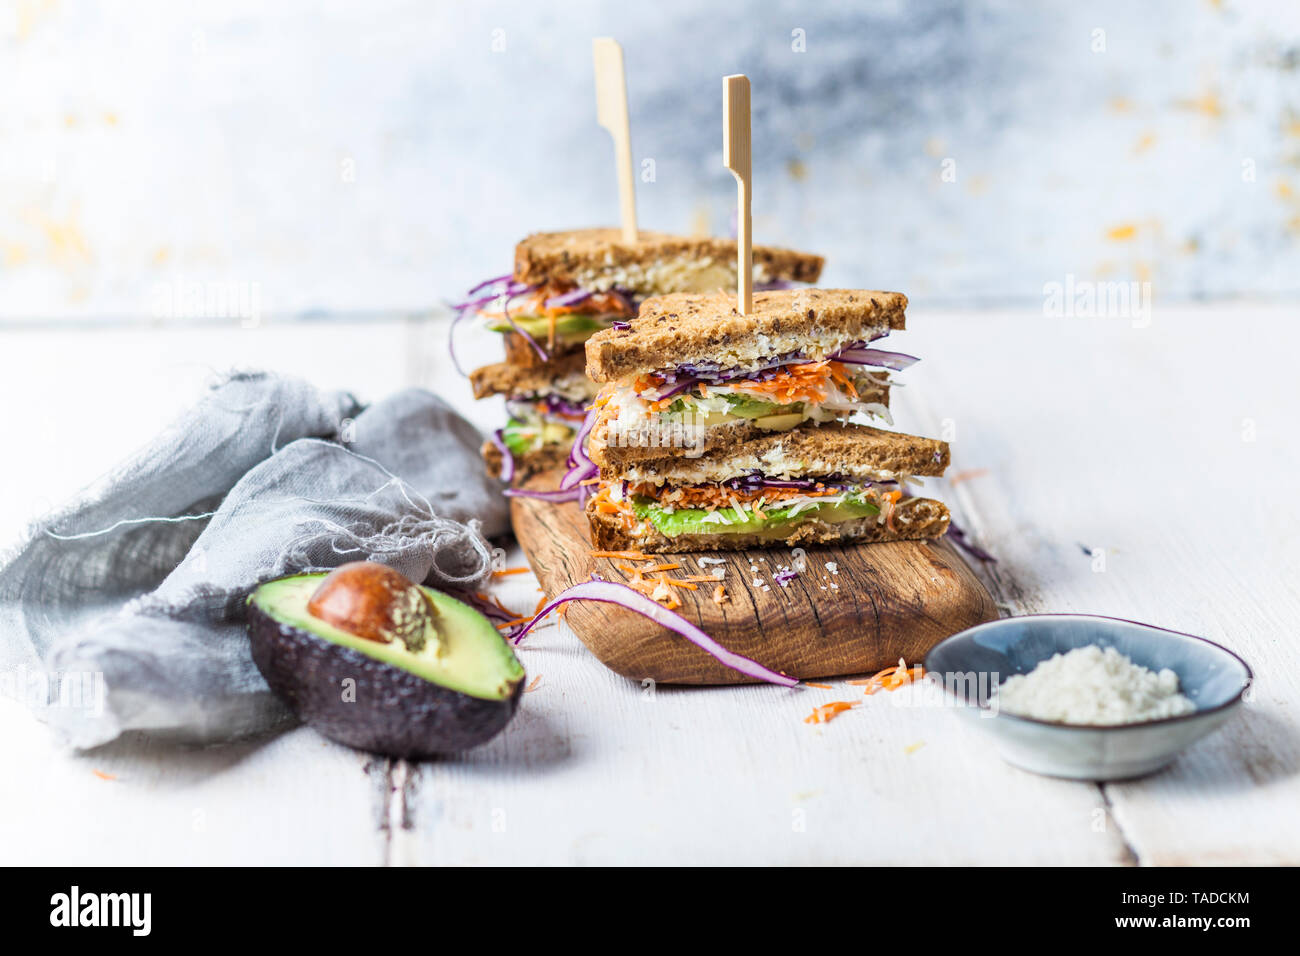 Repas ensemble, Sandwich pain toast avec carottes râpées, chou rouge, chou blanc, avocat et fromage Banque D'Images